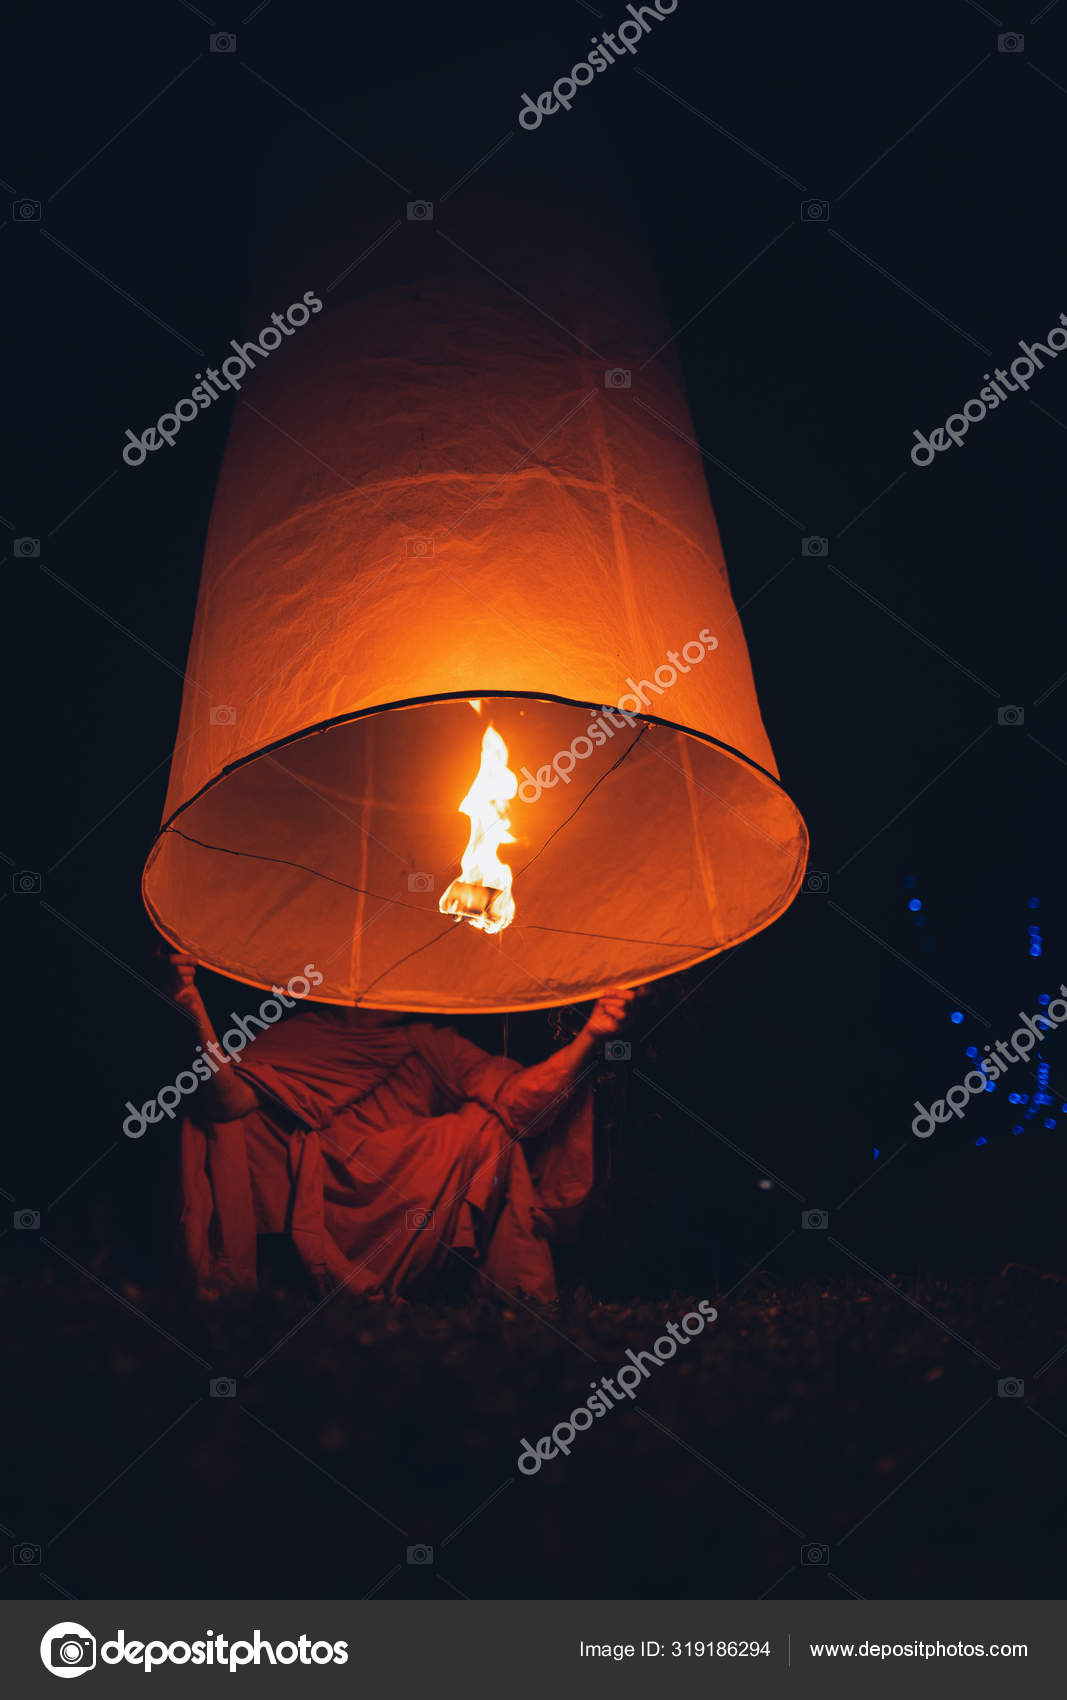 Sky Lantern | Utah Sparklers Orange